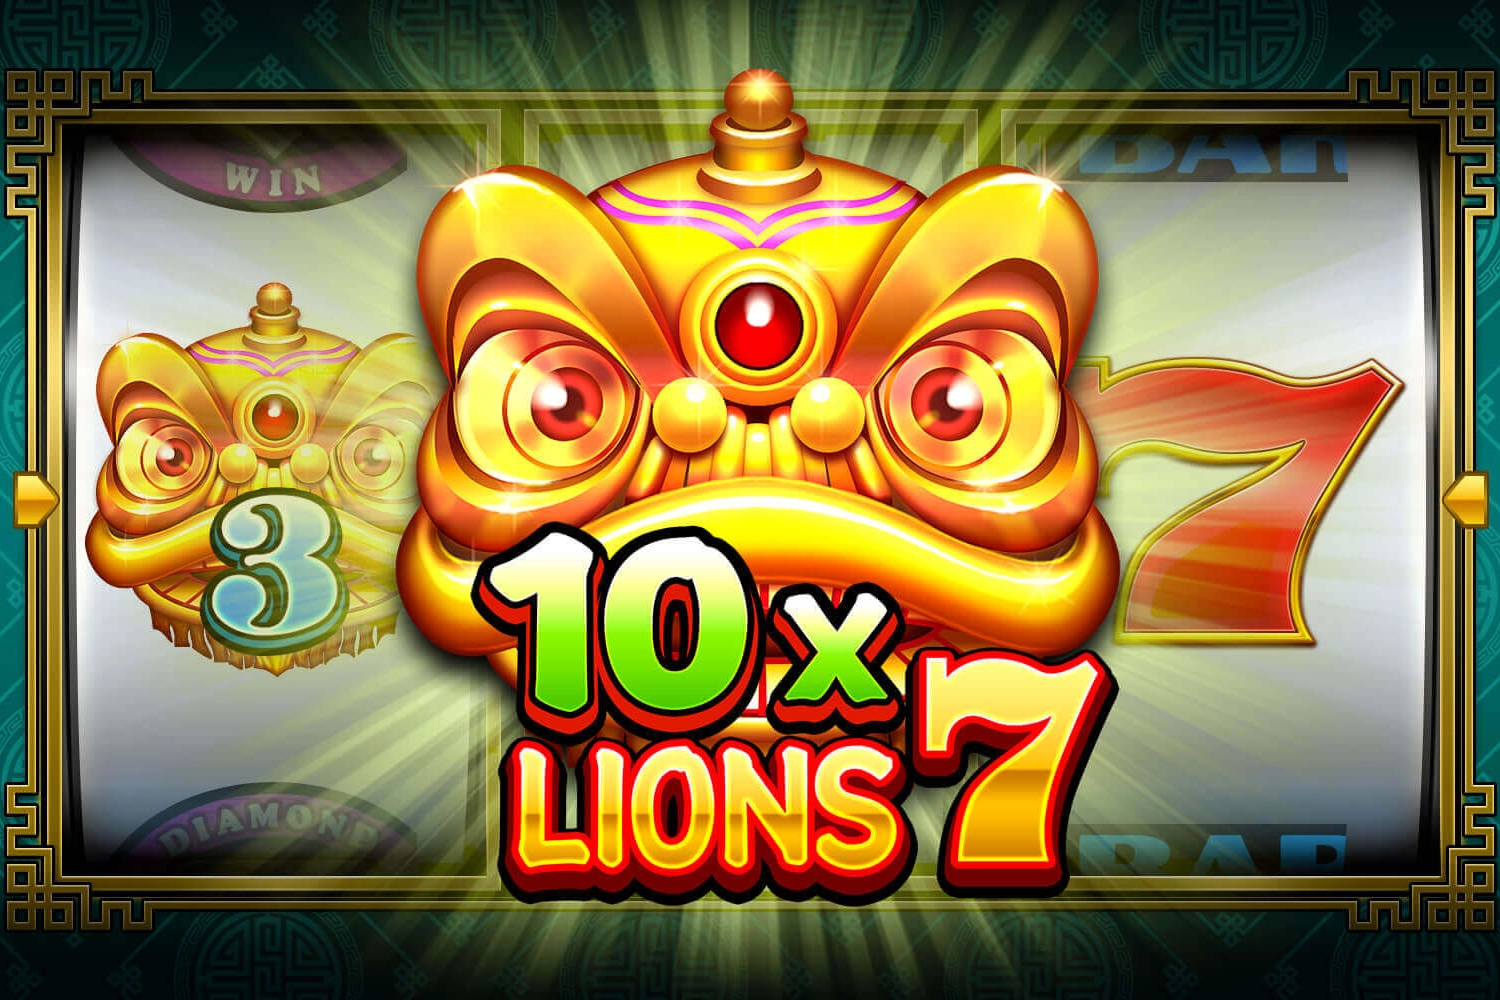 10x Lions 7 Slot